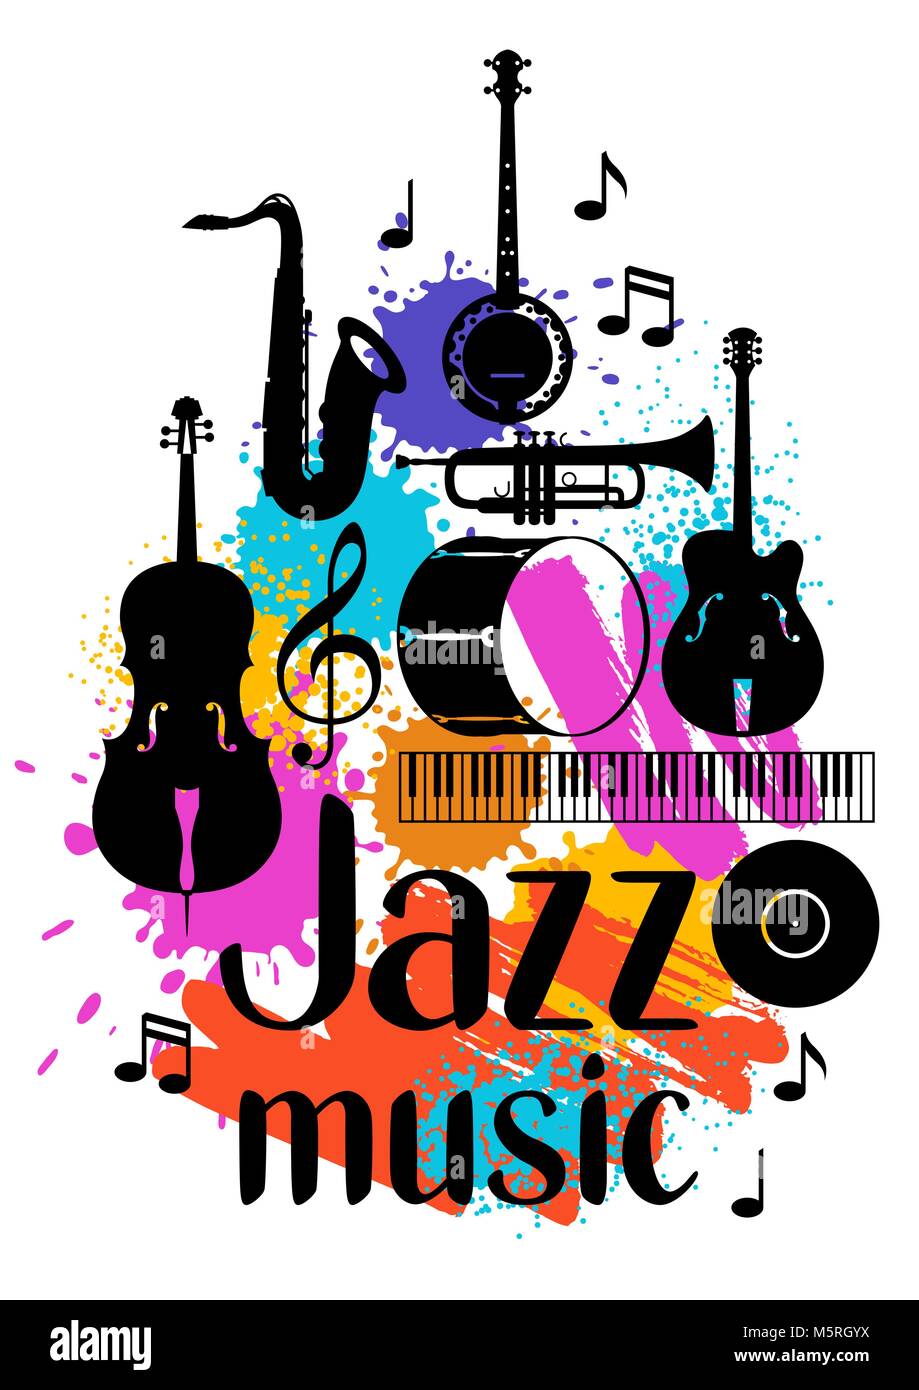 La musique jazz grunge poster avec des instruments de musique Illustration de Vecteur